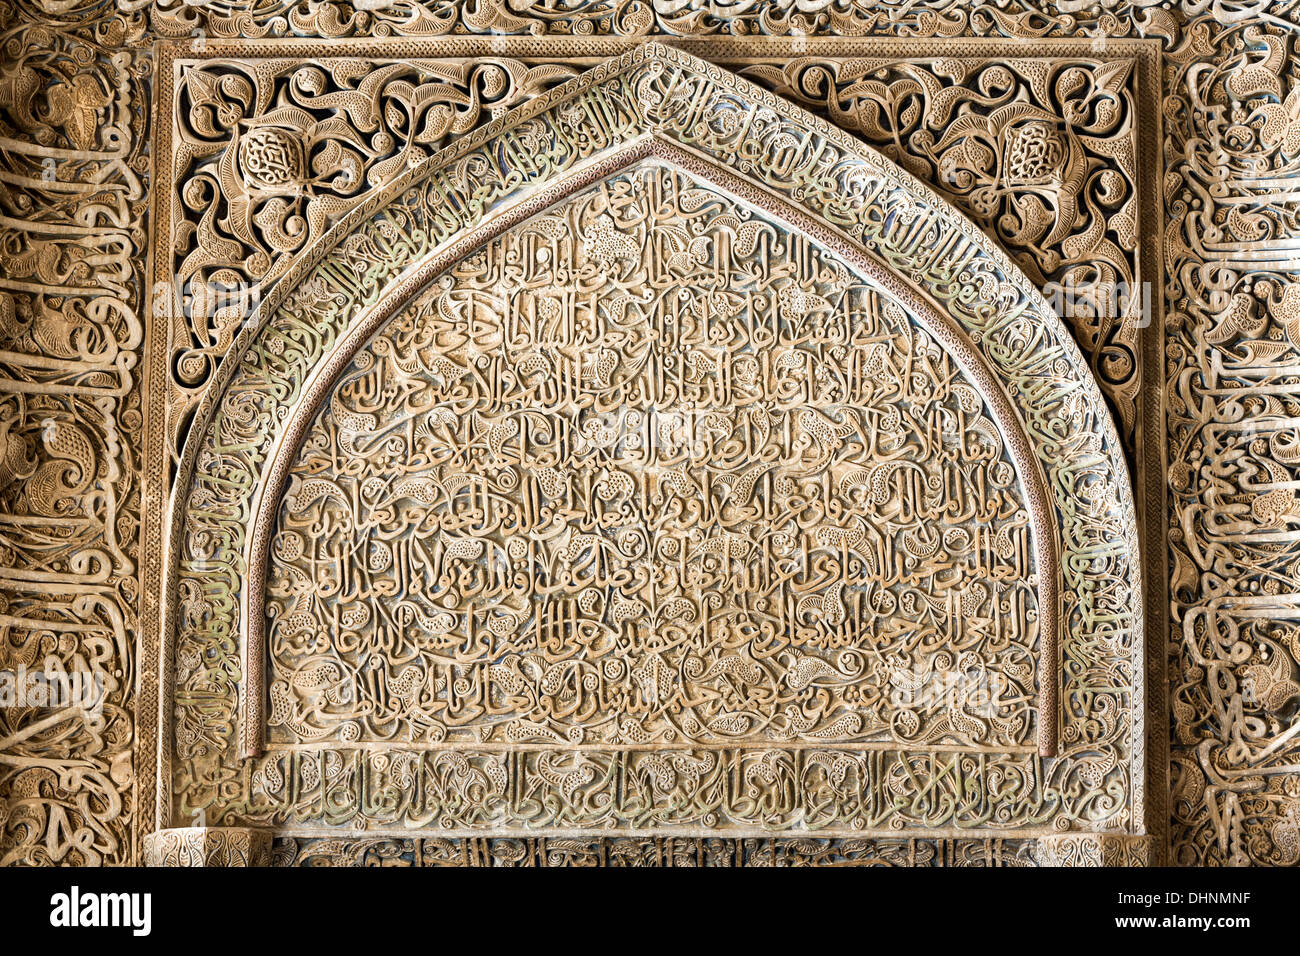 Oljaytu stuc mihrab de la mosquée de vendredi, Isfahan, Iran Banque D'Images